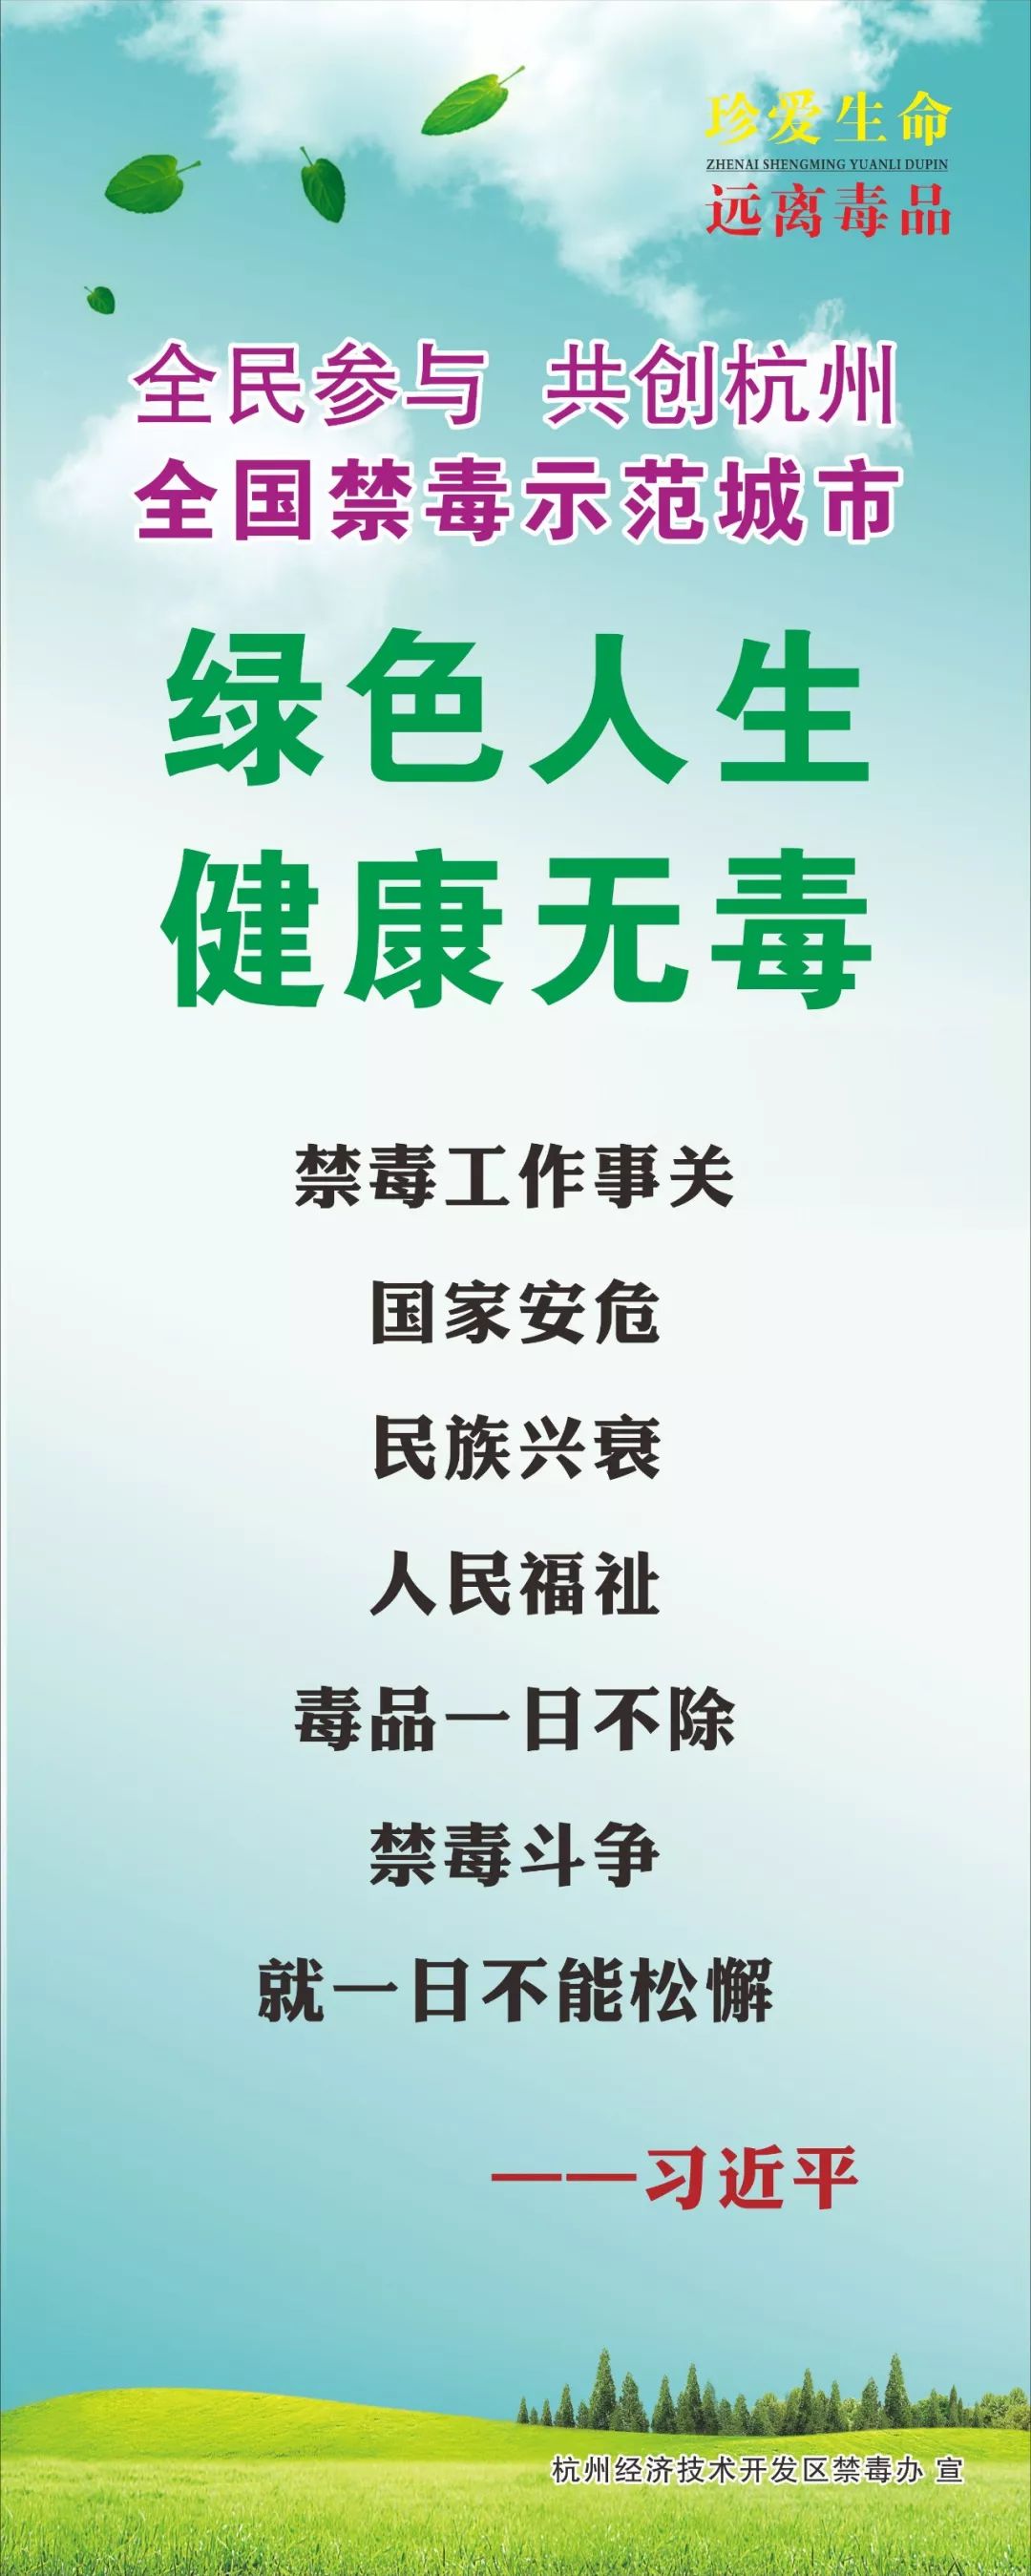 抵制毒品,参与禁毒!杭州经济技术开发区积极响应禁毒号召!